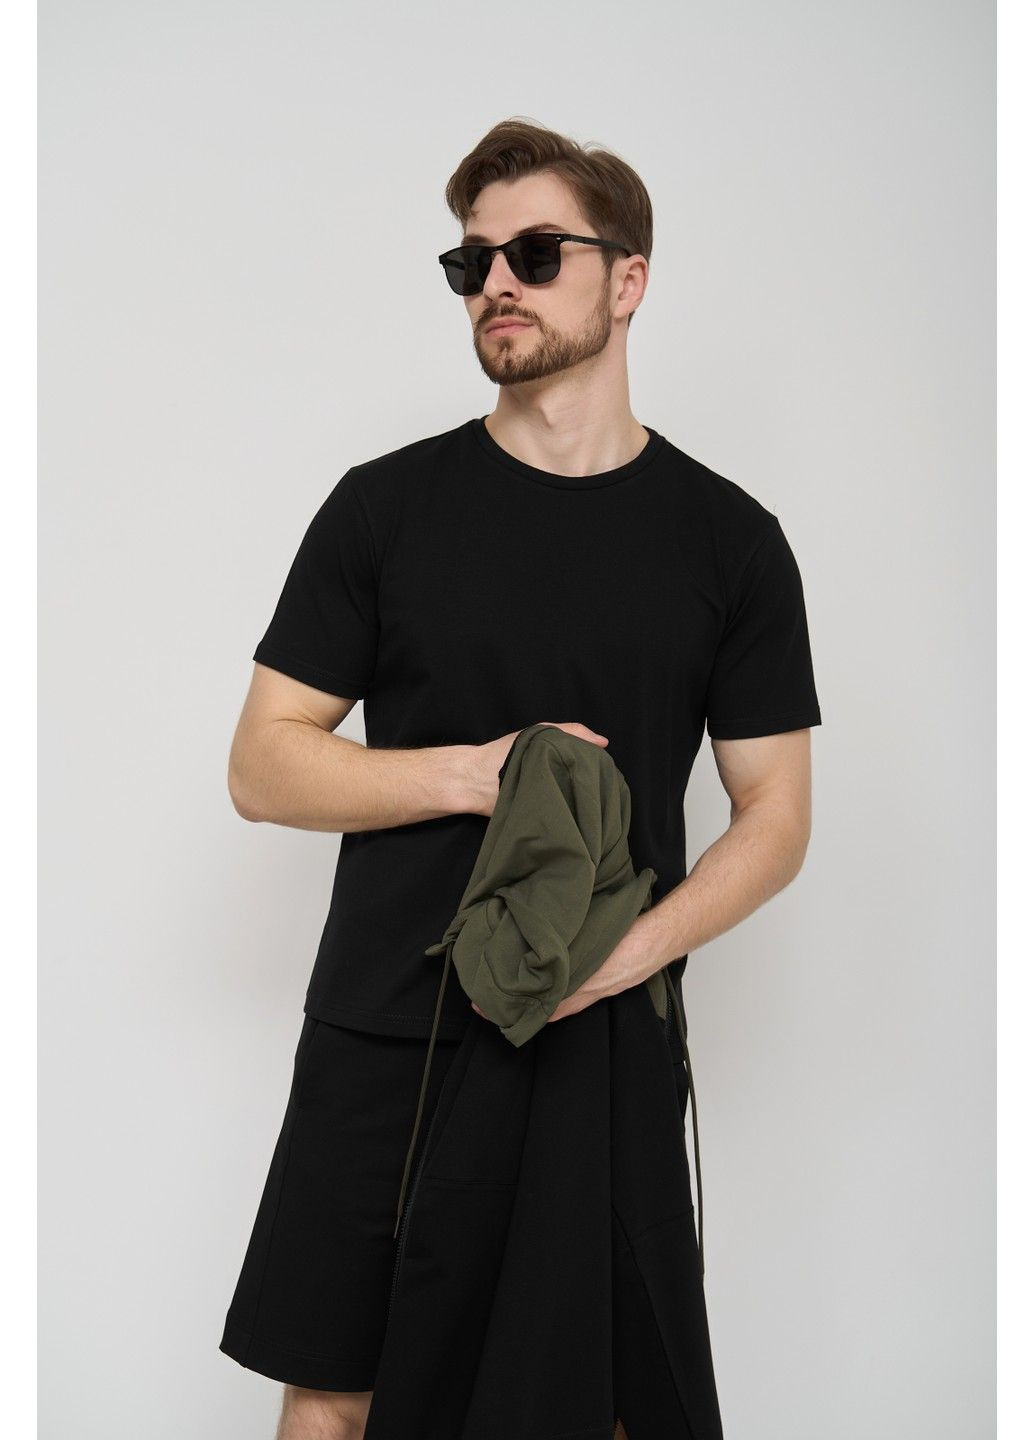 Спортивный костюм мужской ТРОЙКА лето SUMMER с кофтой на замке + шорты + футболка черный хаки Handy Wear (293275170)